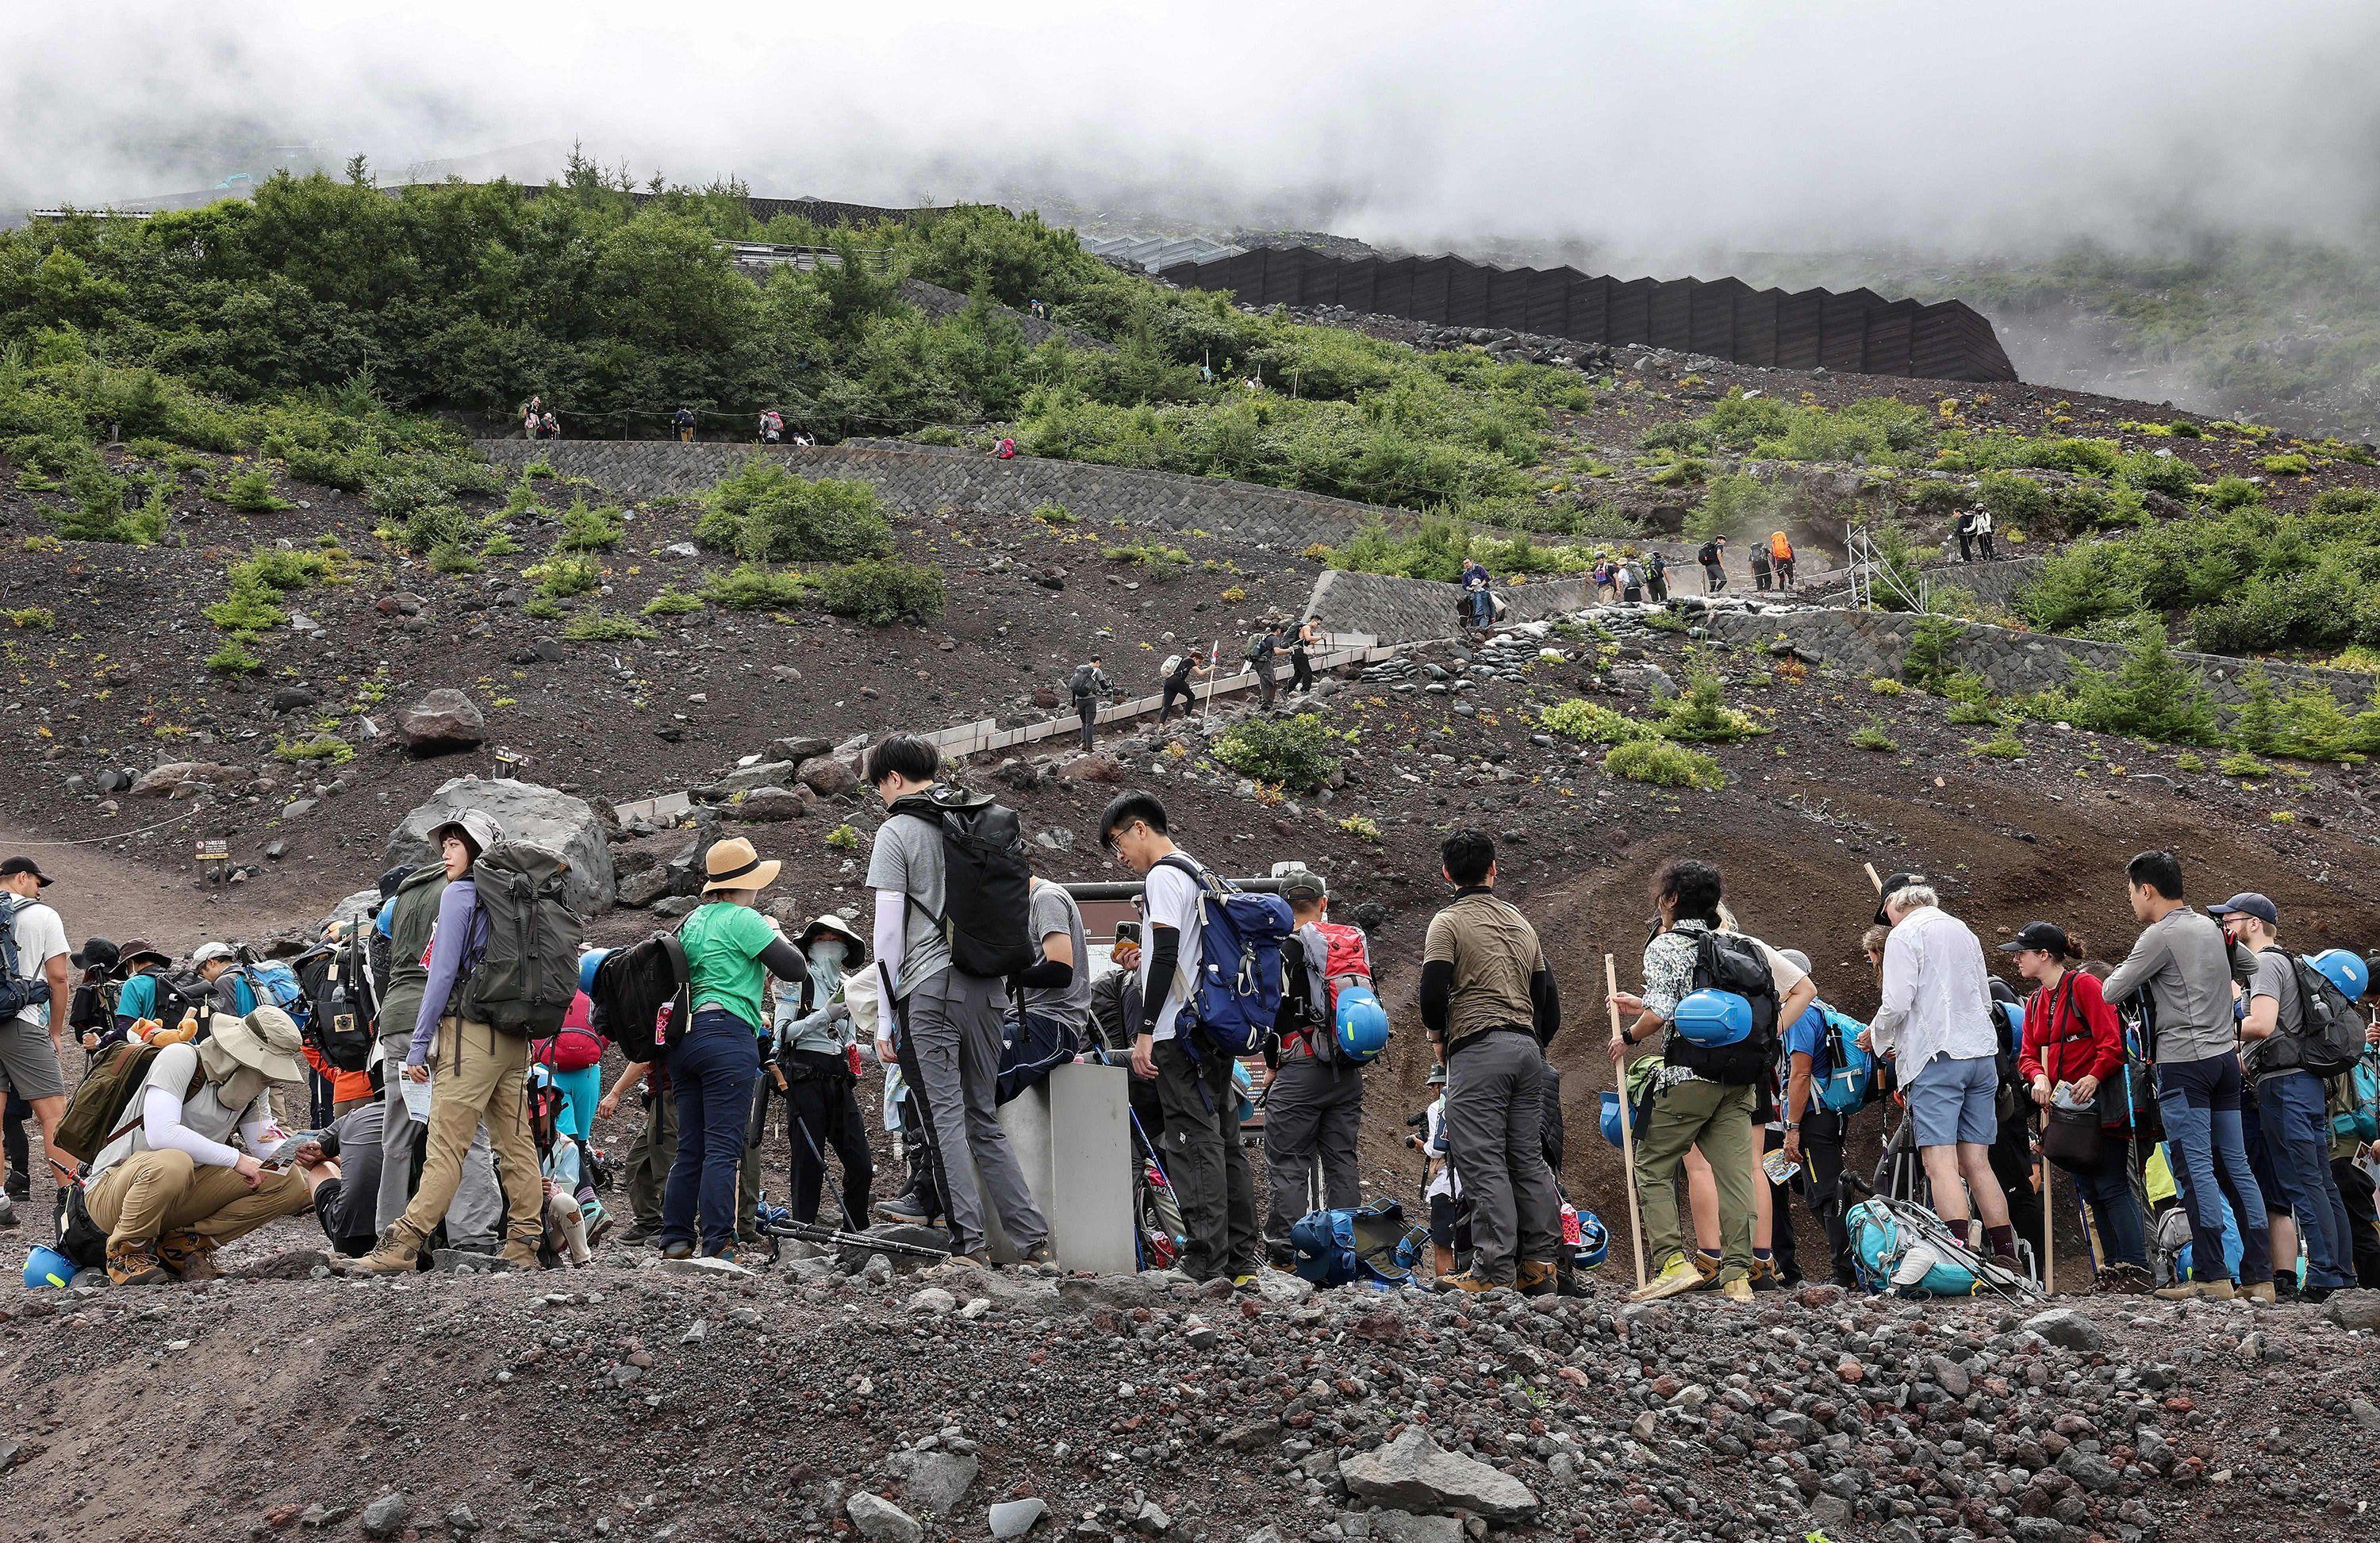 英文外刊阅读： Mount Fuji introducing new measures to guard against overtourism